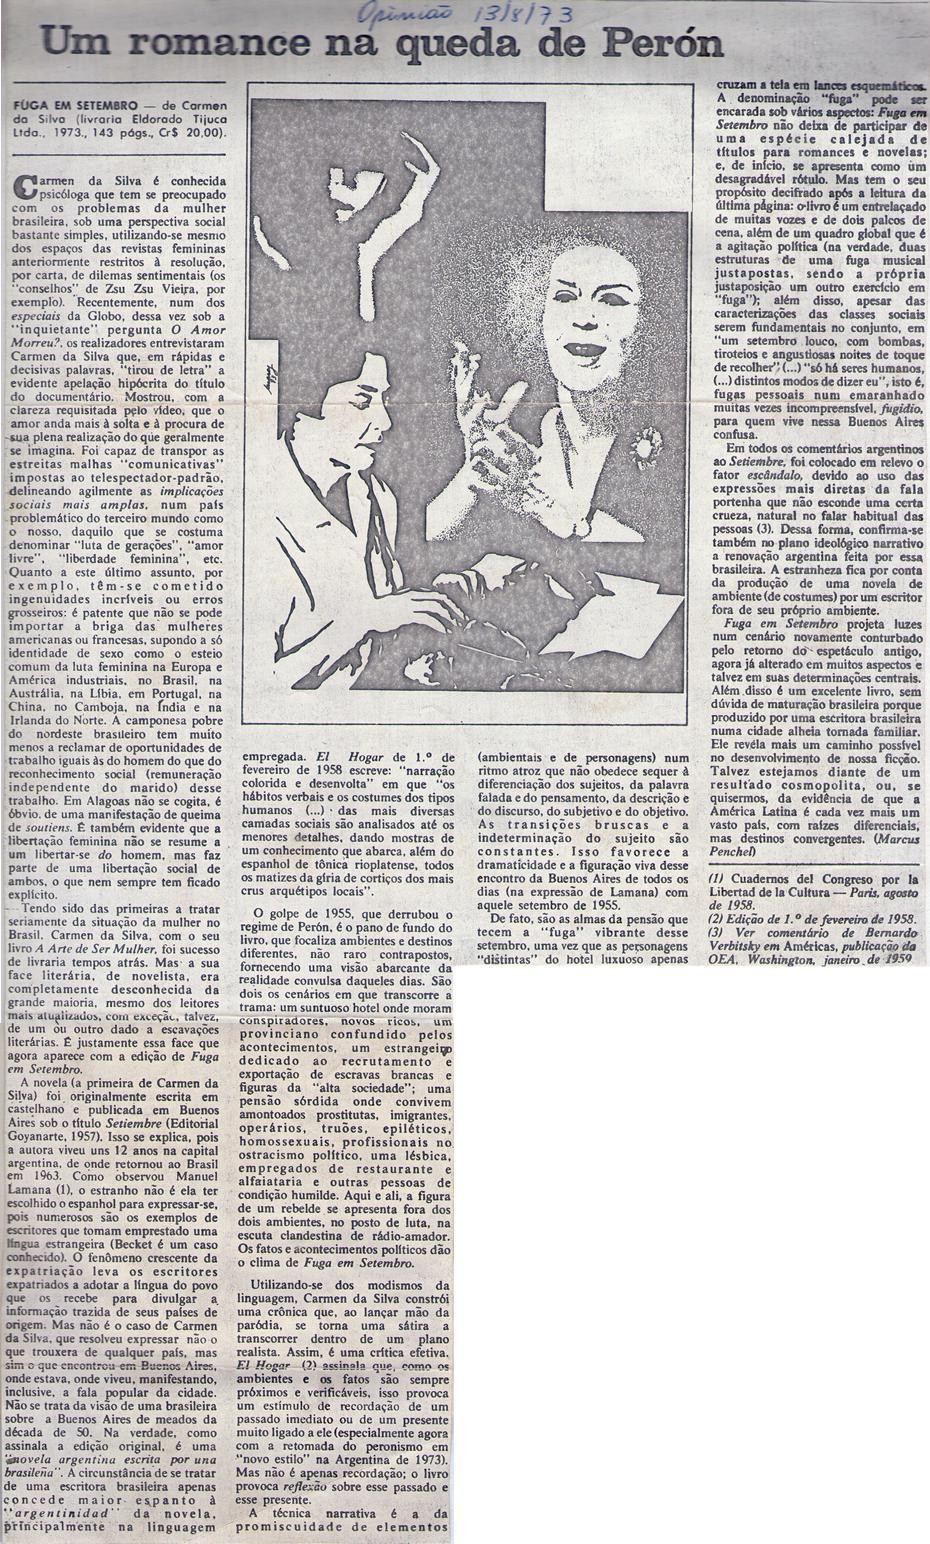 13 de Agosto de 1973 - Opinião. Uma romance na queda de Perón.